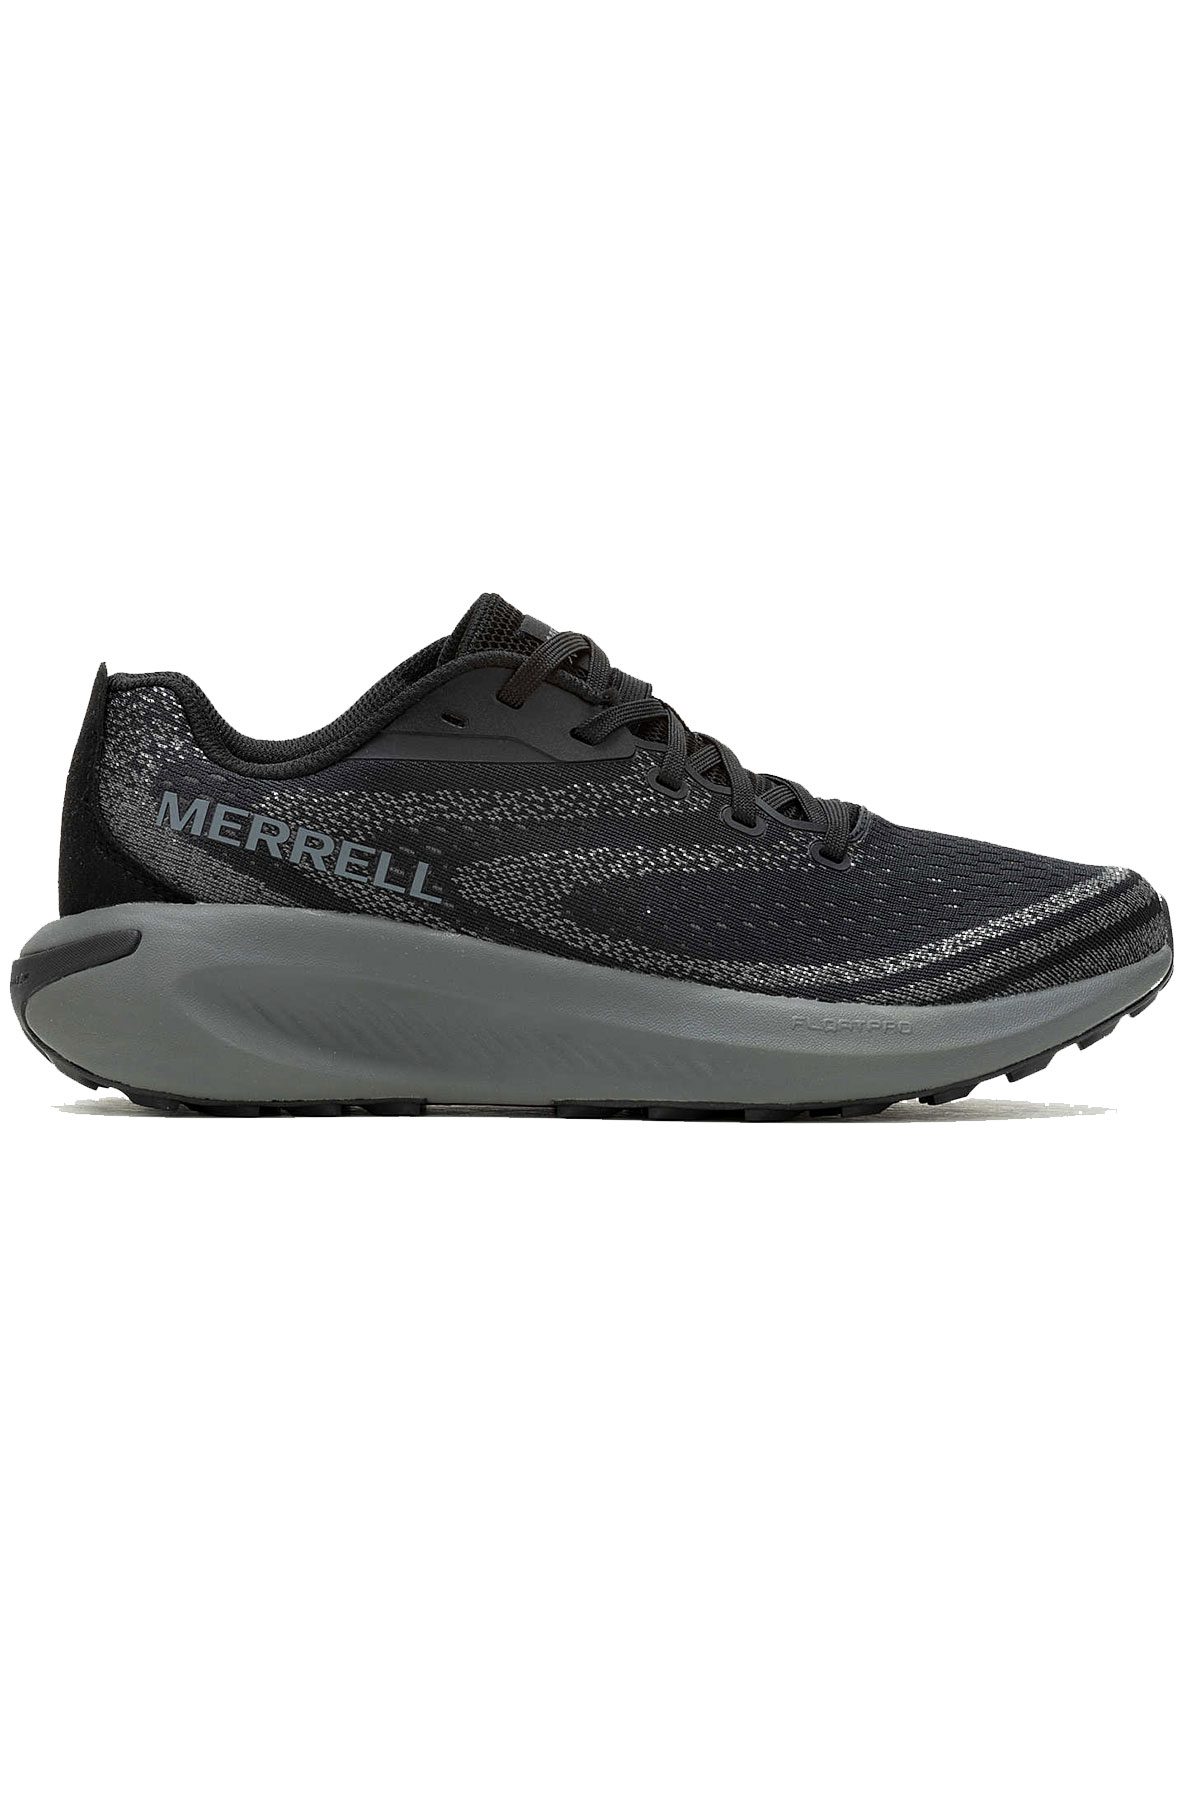 Merrell Morphlıte Siyah Erkek Outdoor Koşu Ayakkabısı